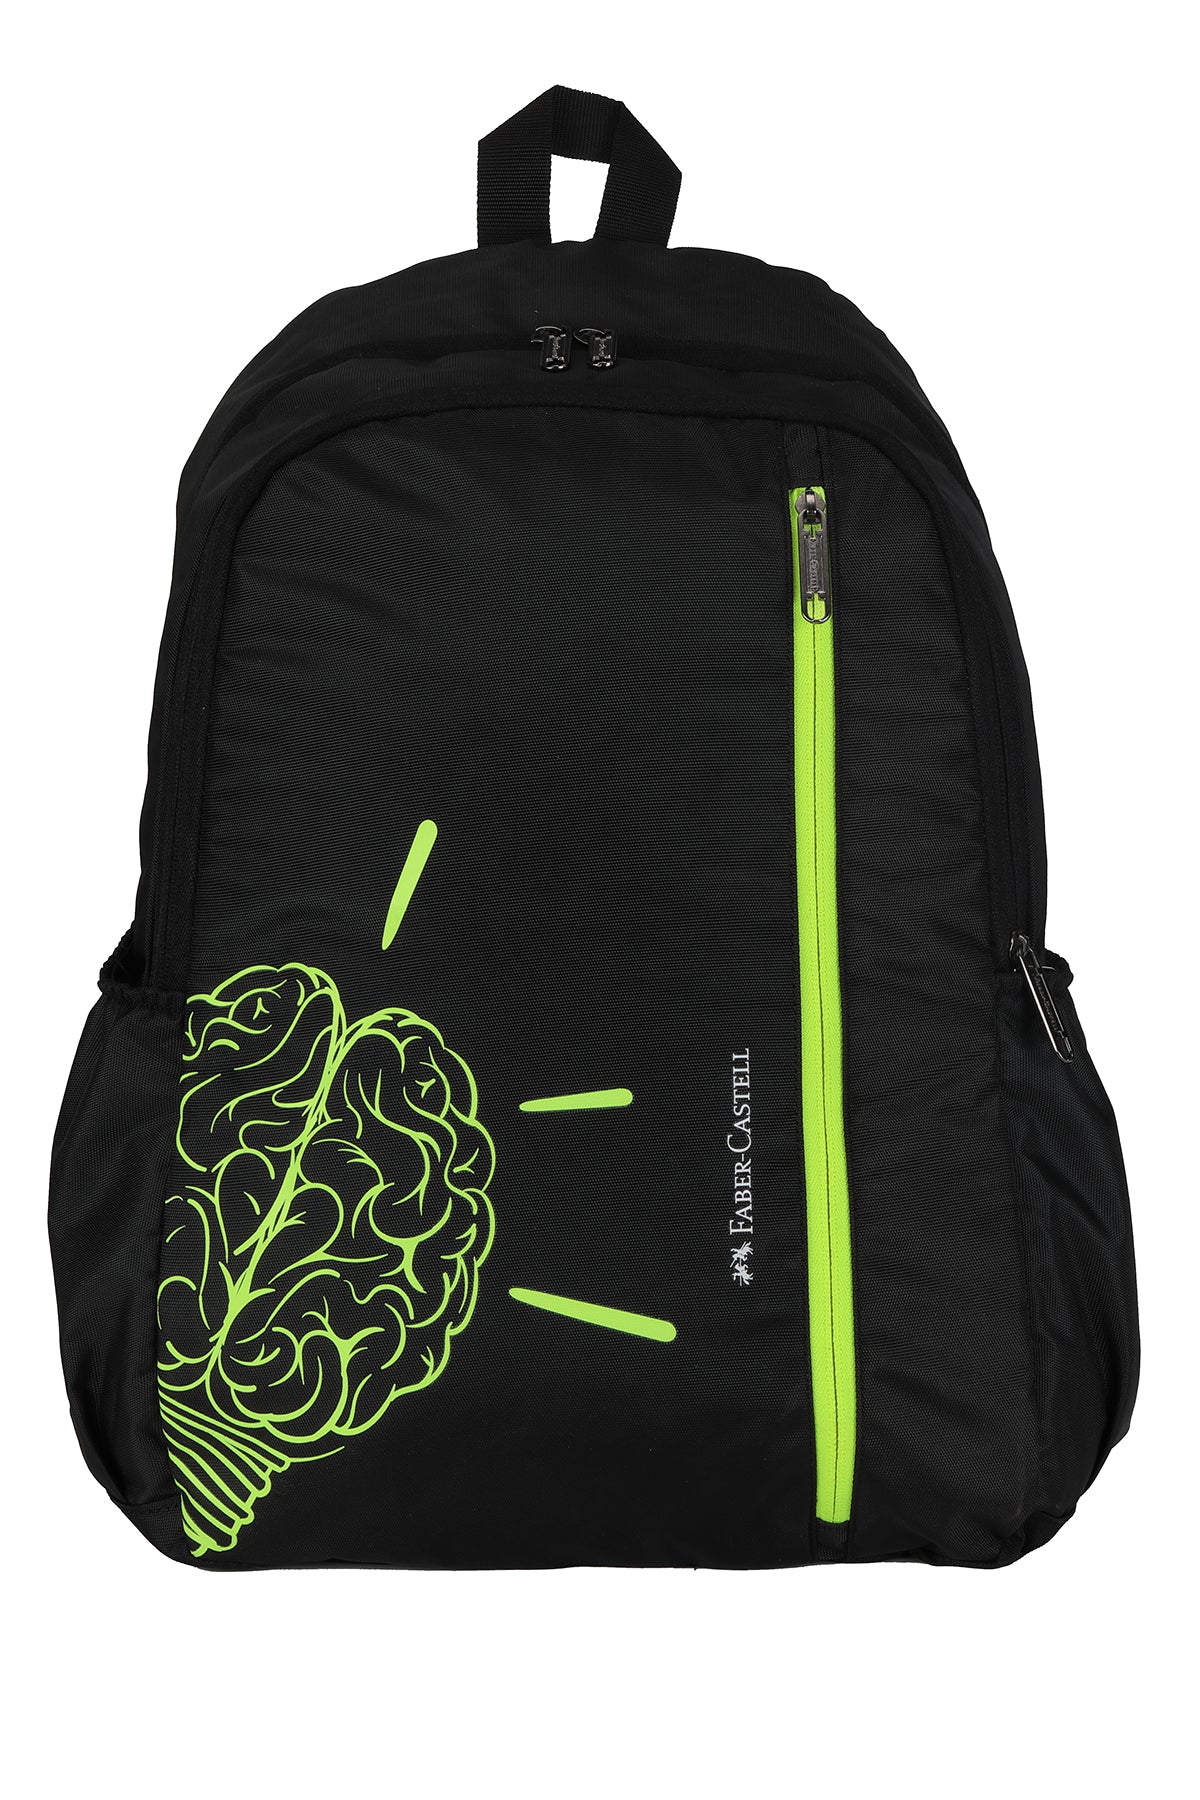 Neon Brain Kids School Bag